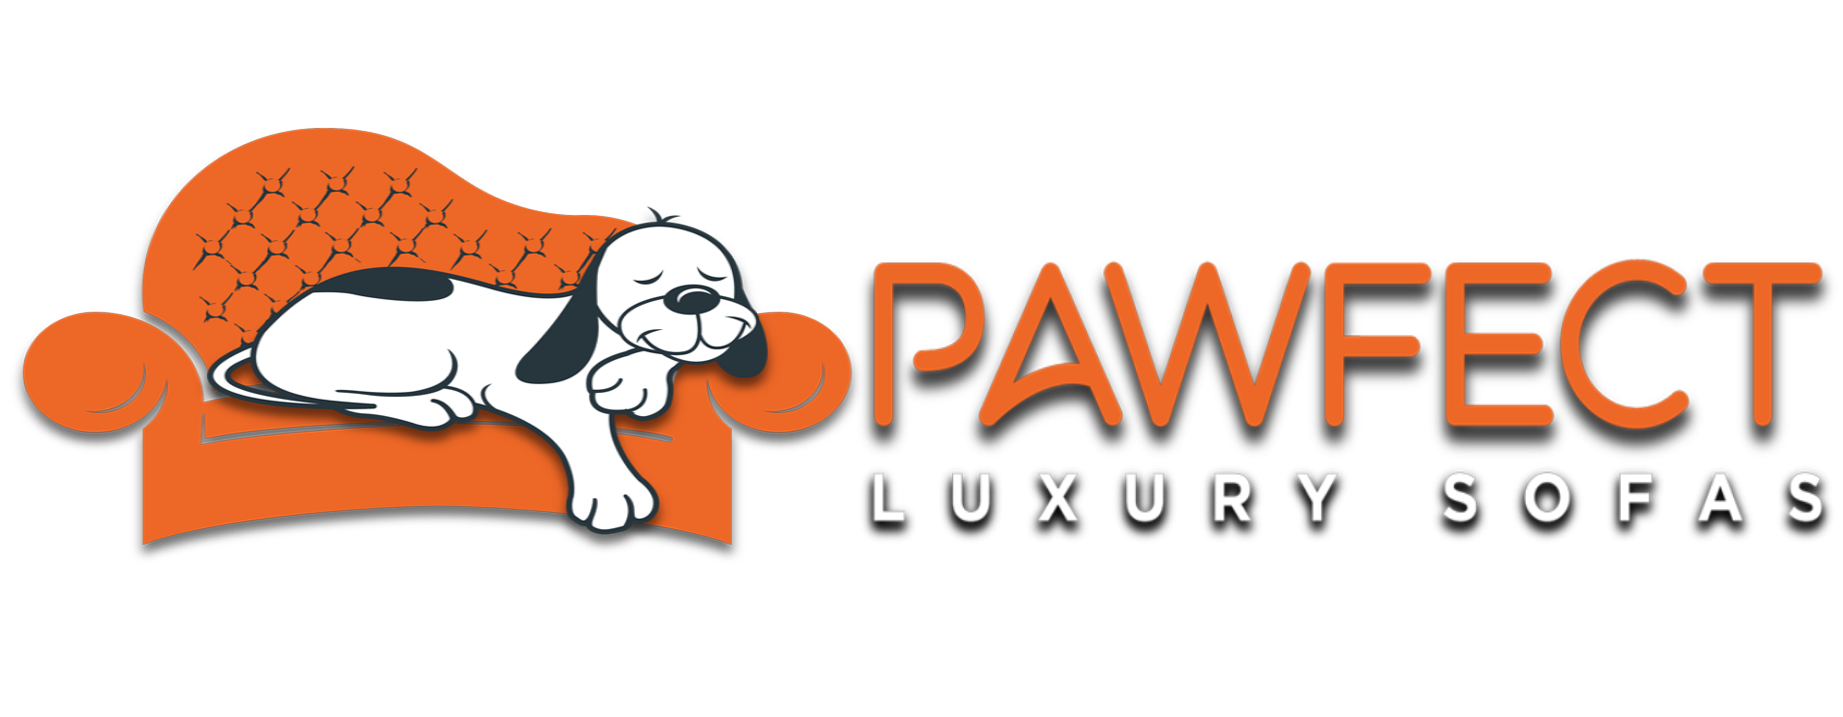 pawfect luxury sofas logo